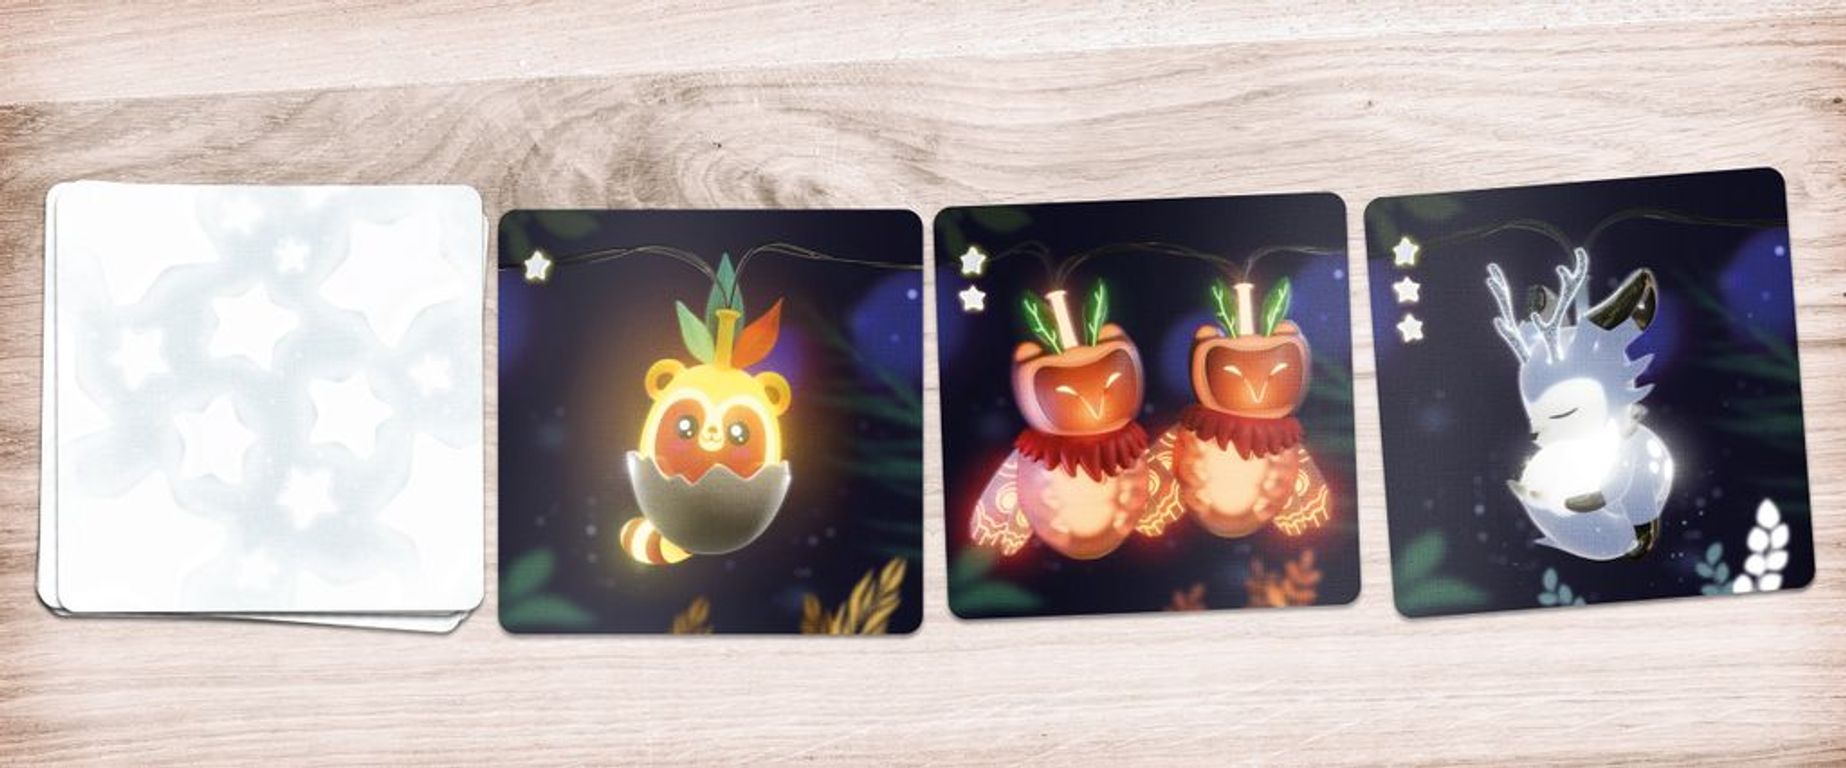 Fairy Lights cards